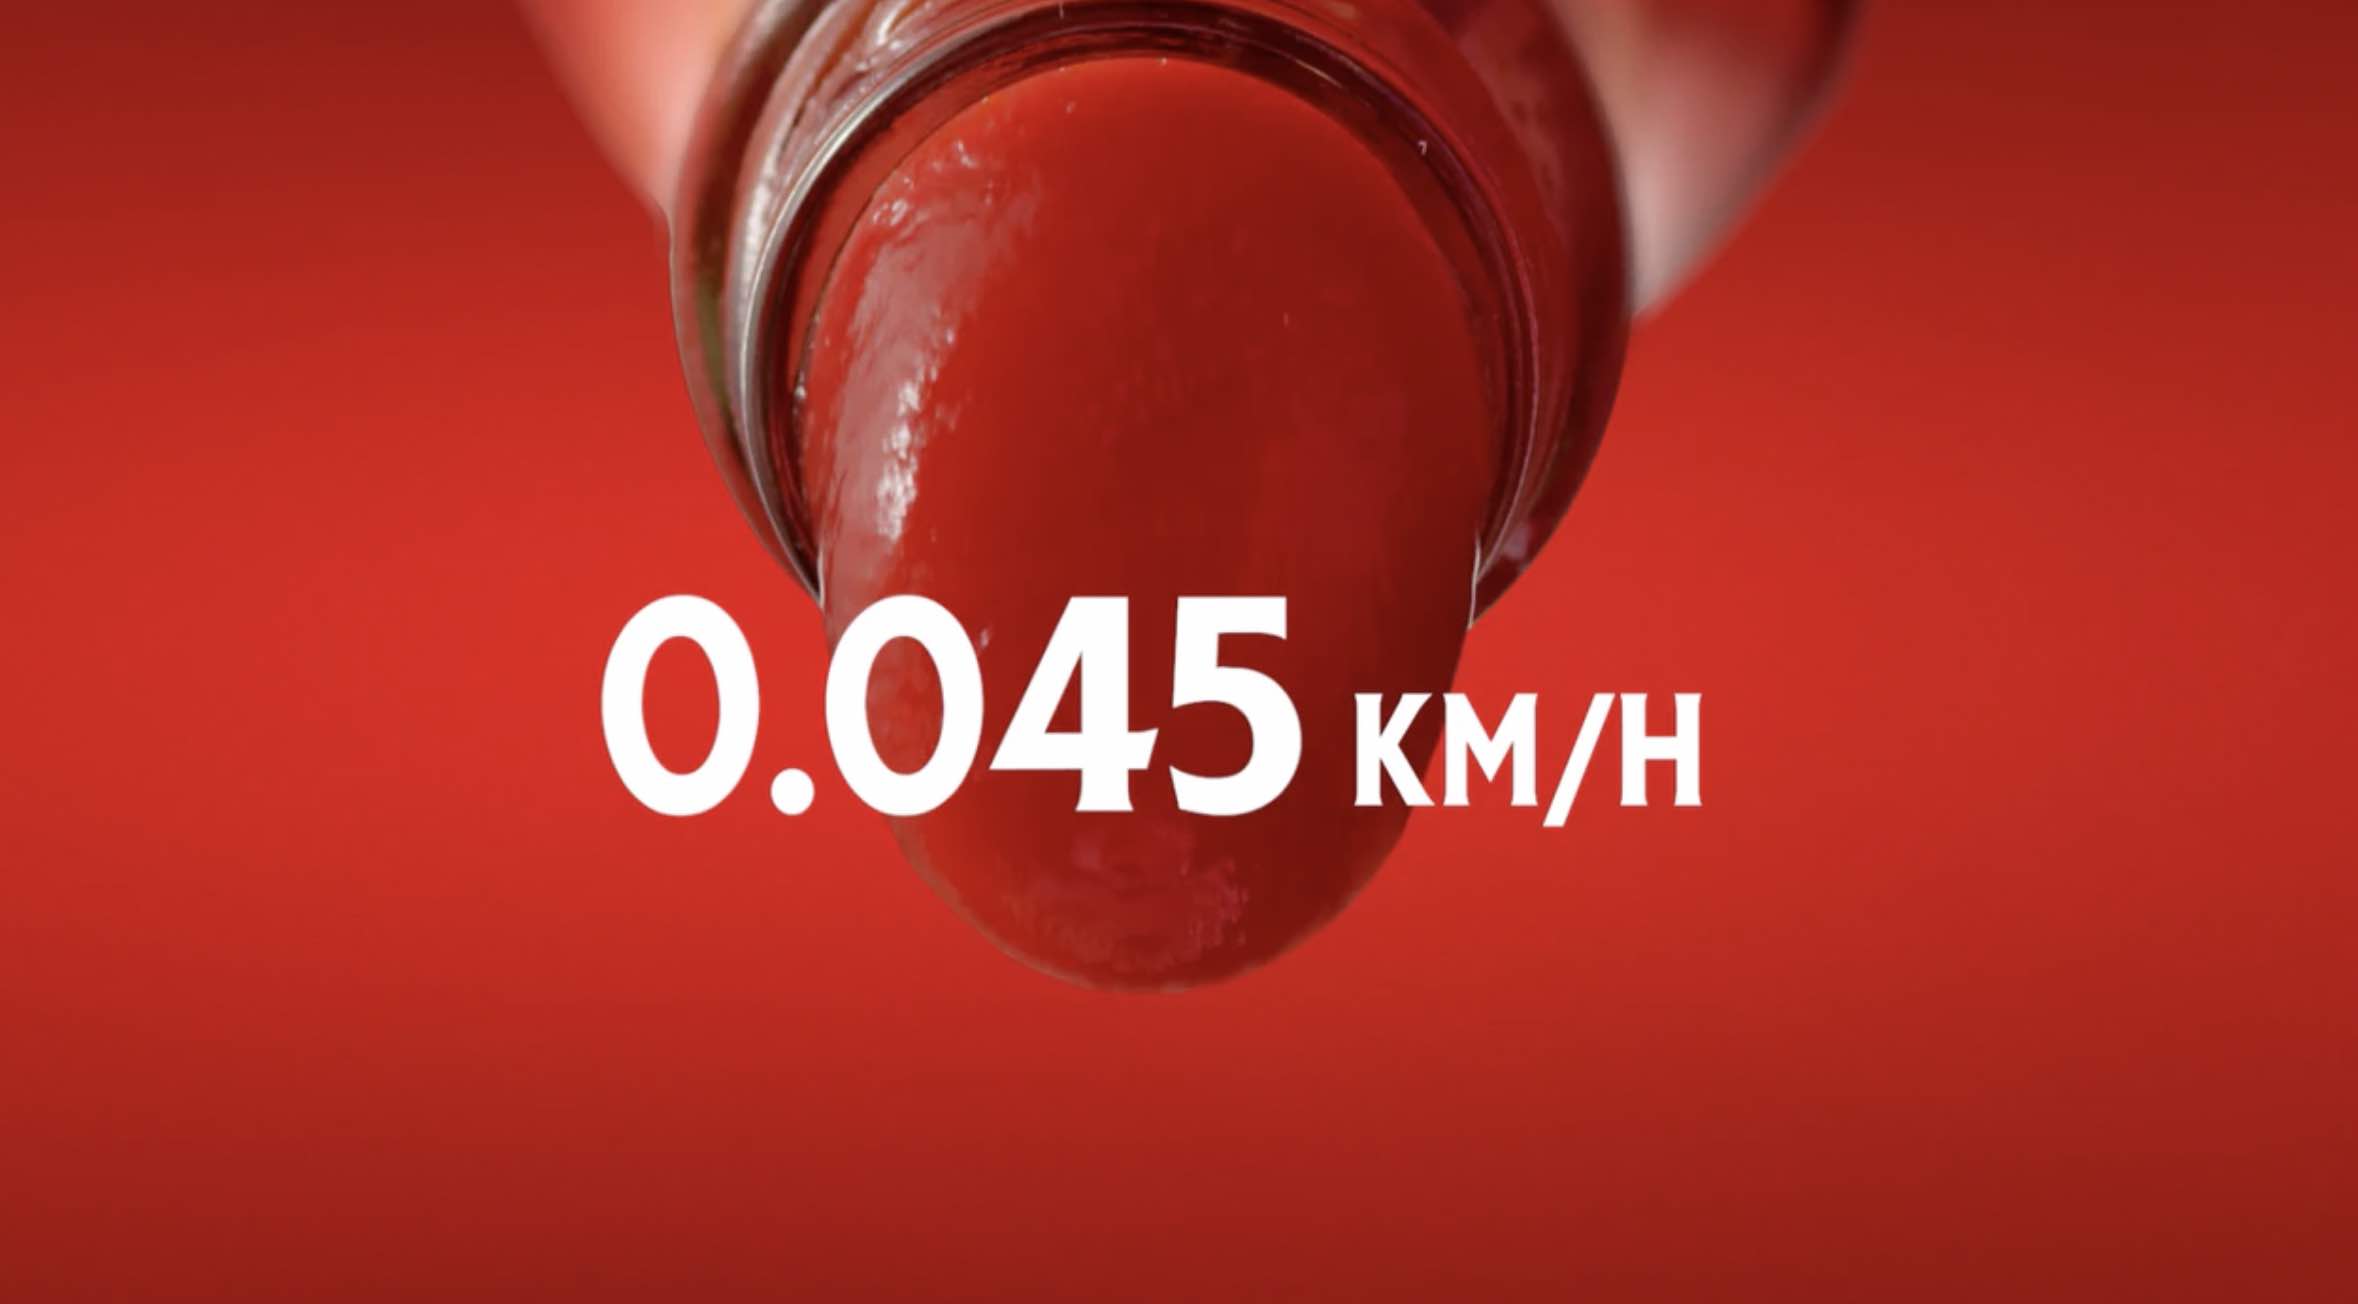 Heinz récompense les automobilistes qui roulent à la vitesse du ketchup (Focalys)